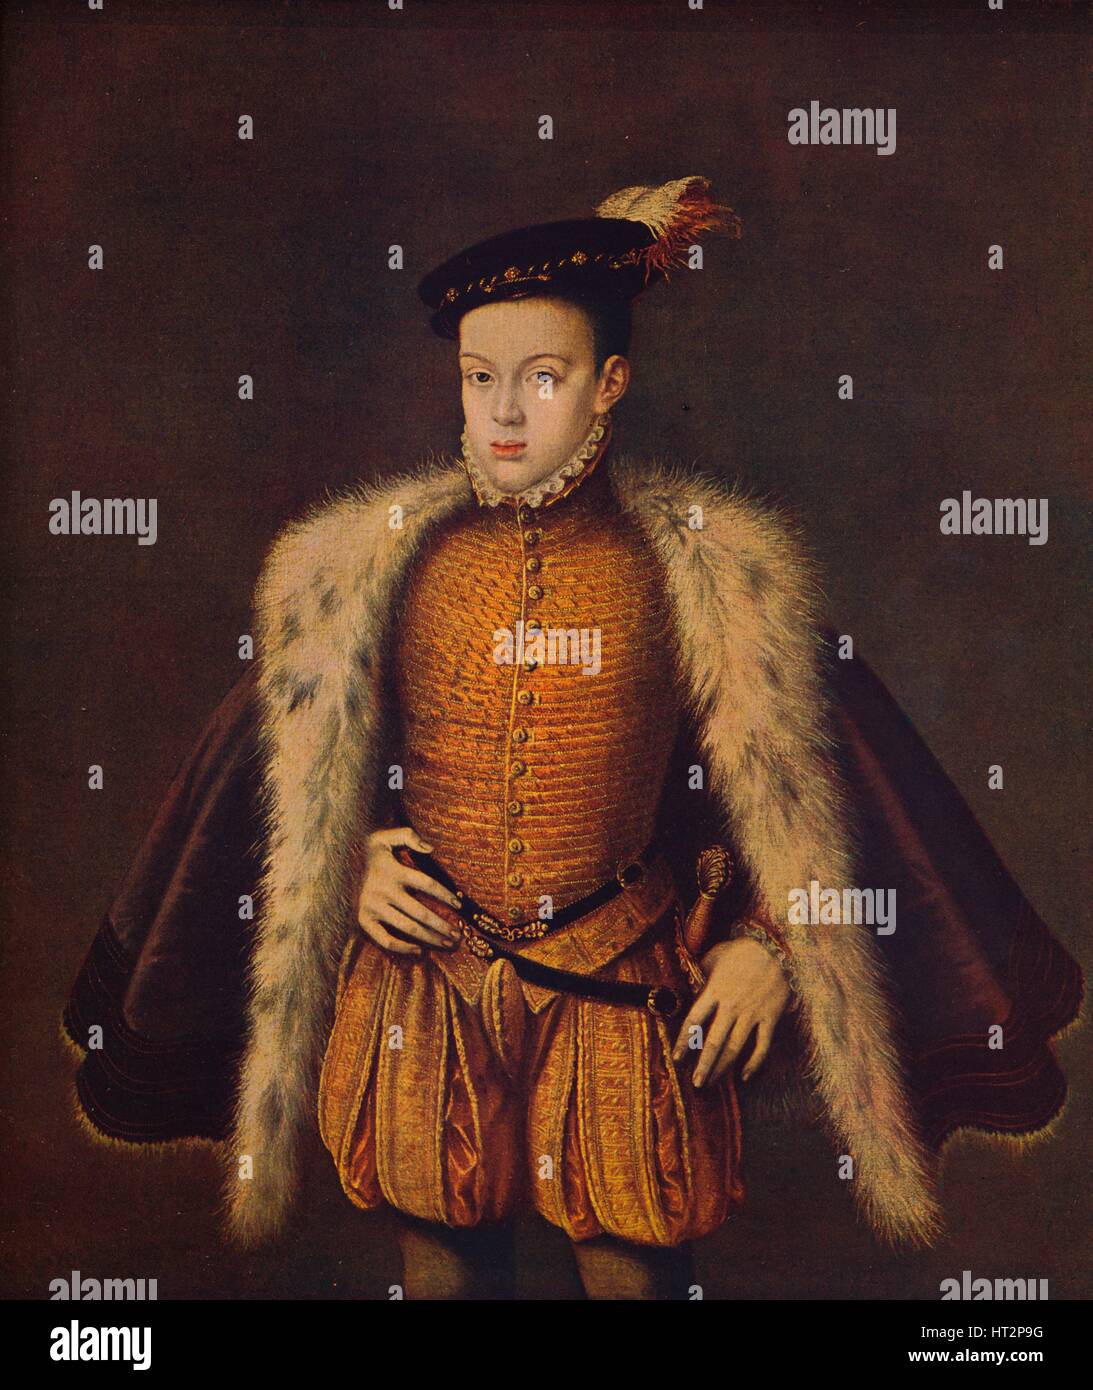 'Principe Don Carlos hijo de Felipe II', (Prince Carlos de Austria), 1557-1559, (c1934). Artist: Alonso Sanchez Coello. Stock Photo